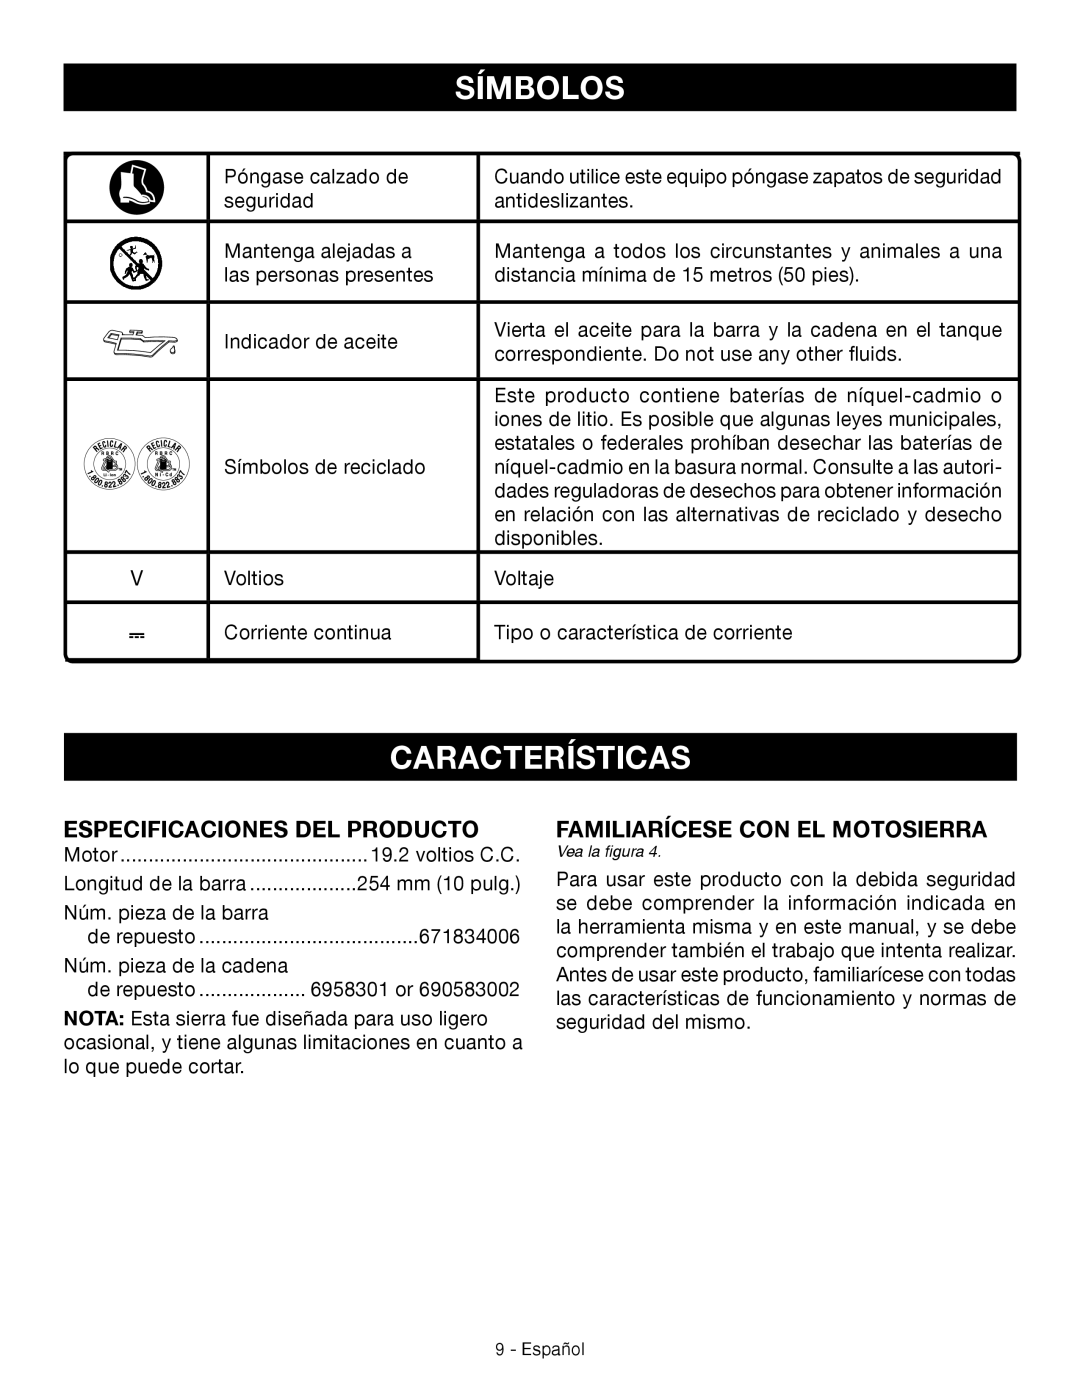 Craftsman 315.3413 manual Características, Símbolos, Especificaciones Del Producto, Familiarícese Con El Motosierra 